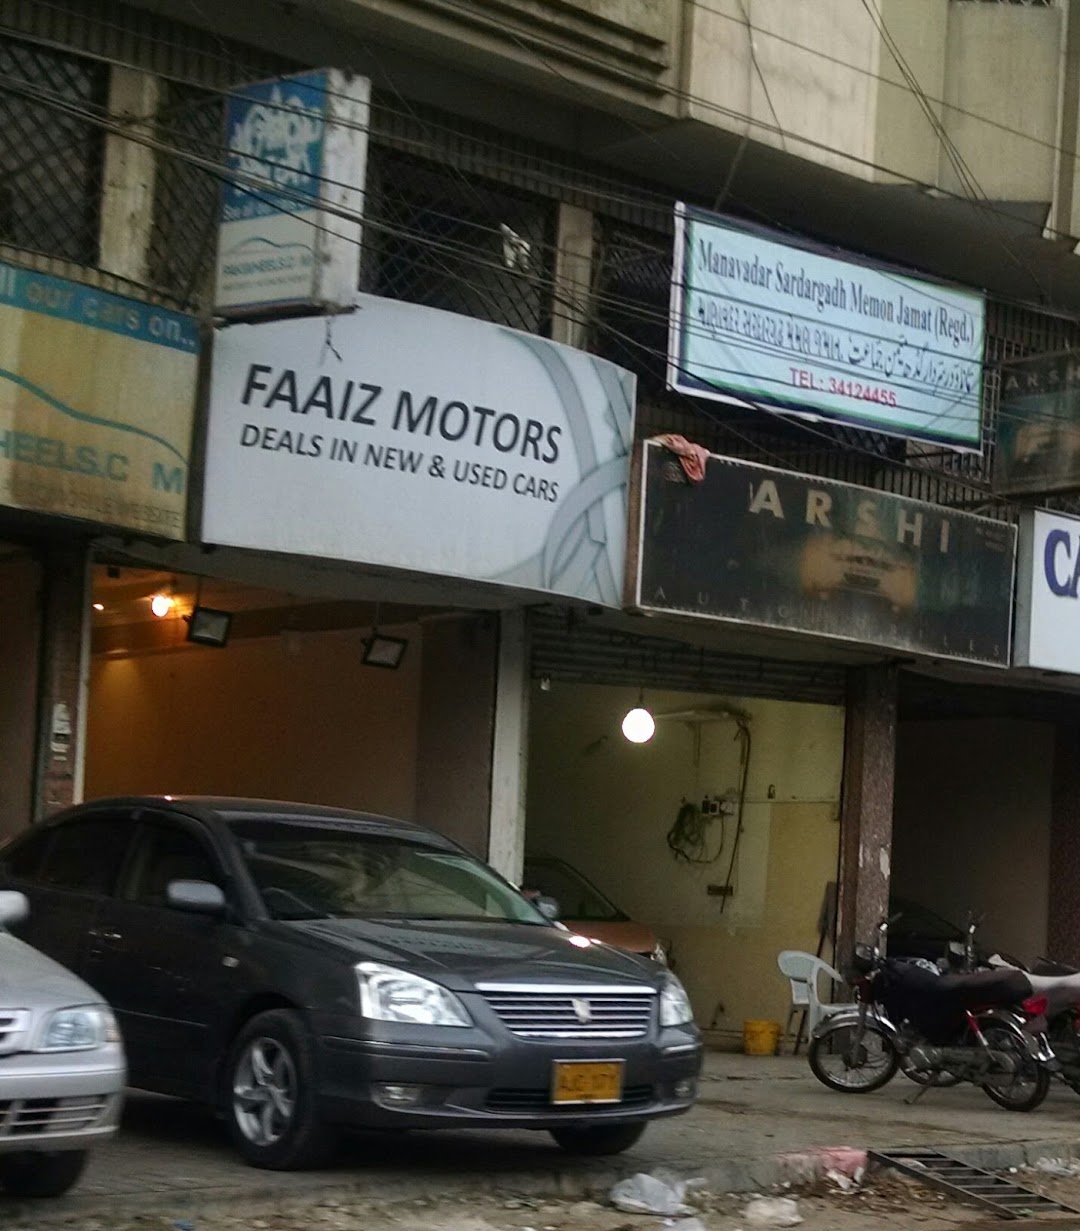 Faaiz Motors